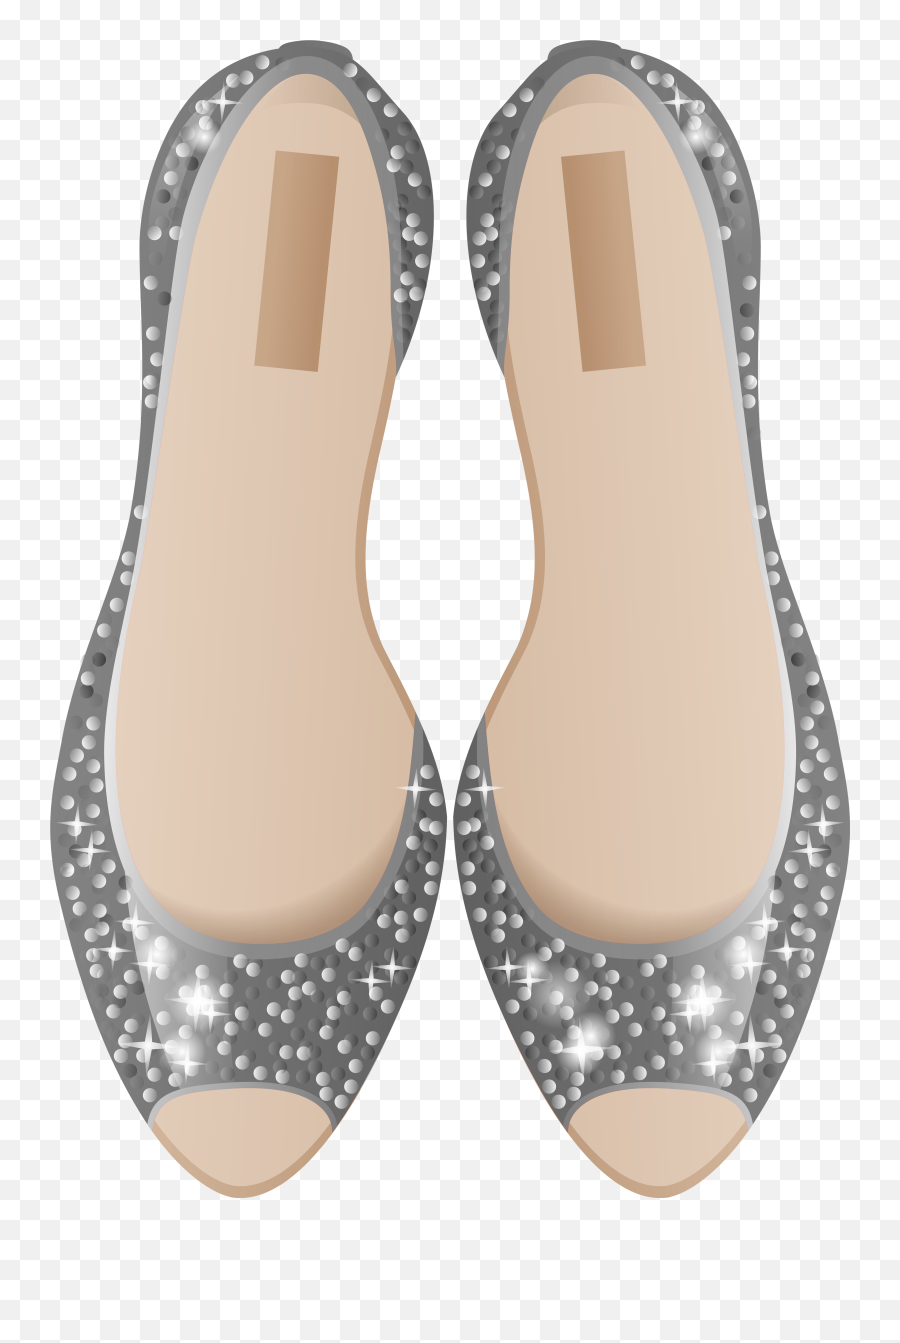 Silver Shoes Png Clip Art - Shoe Transparent Cartoon Jingfm Shoe,Cartoon Shoes Png